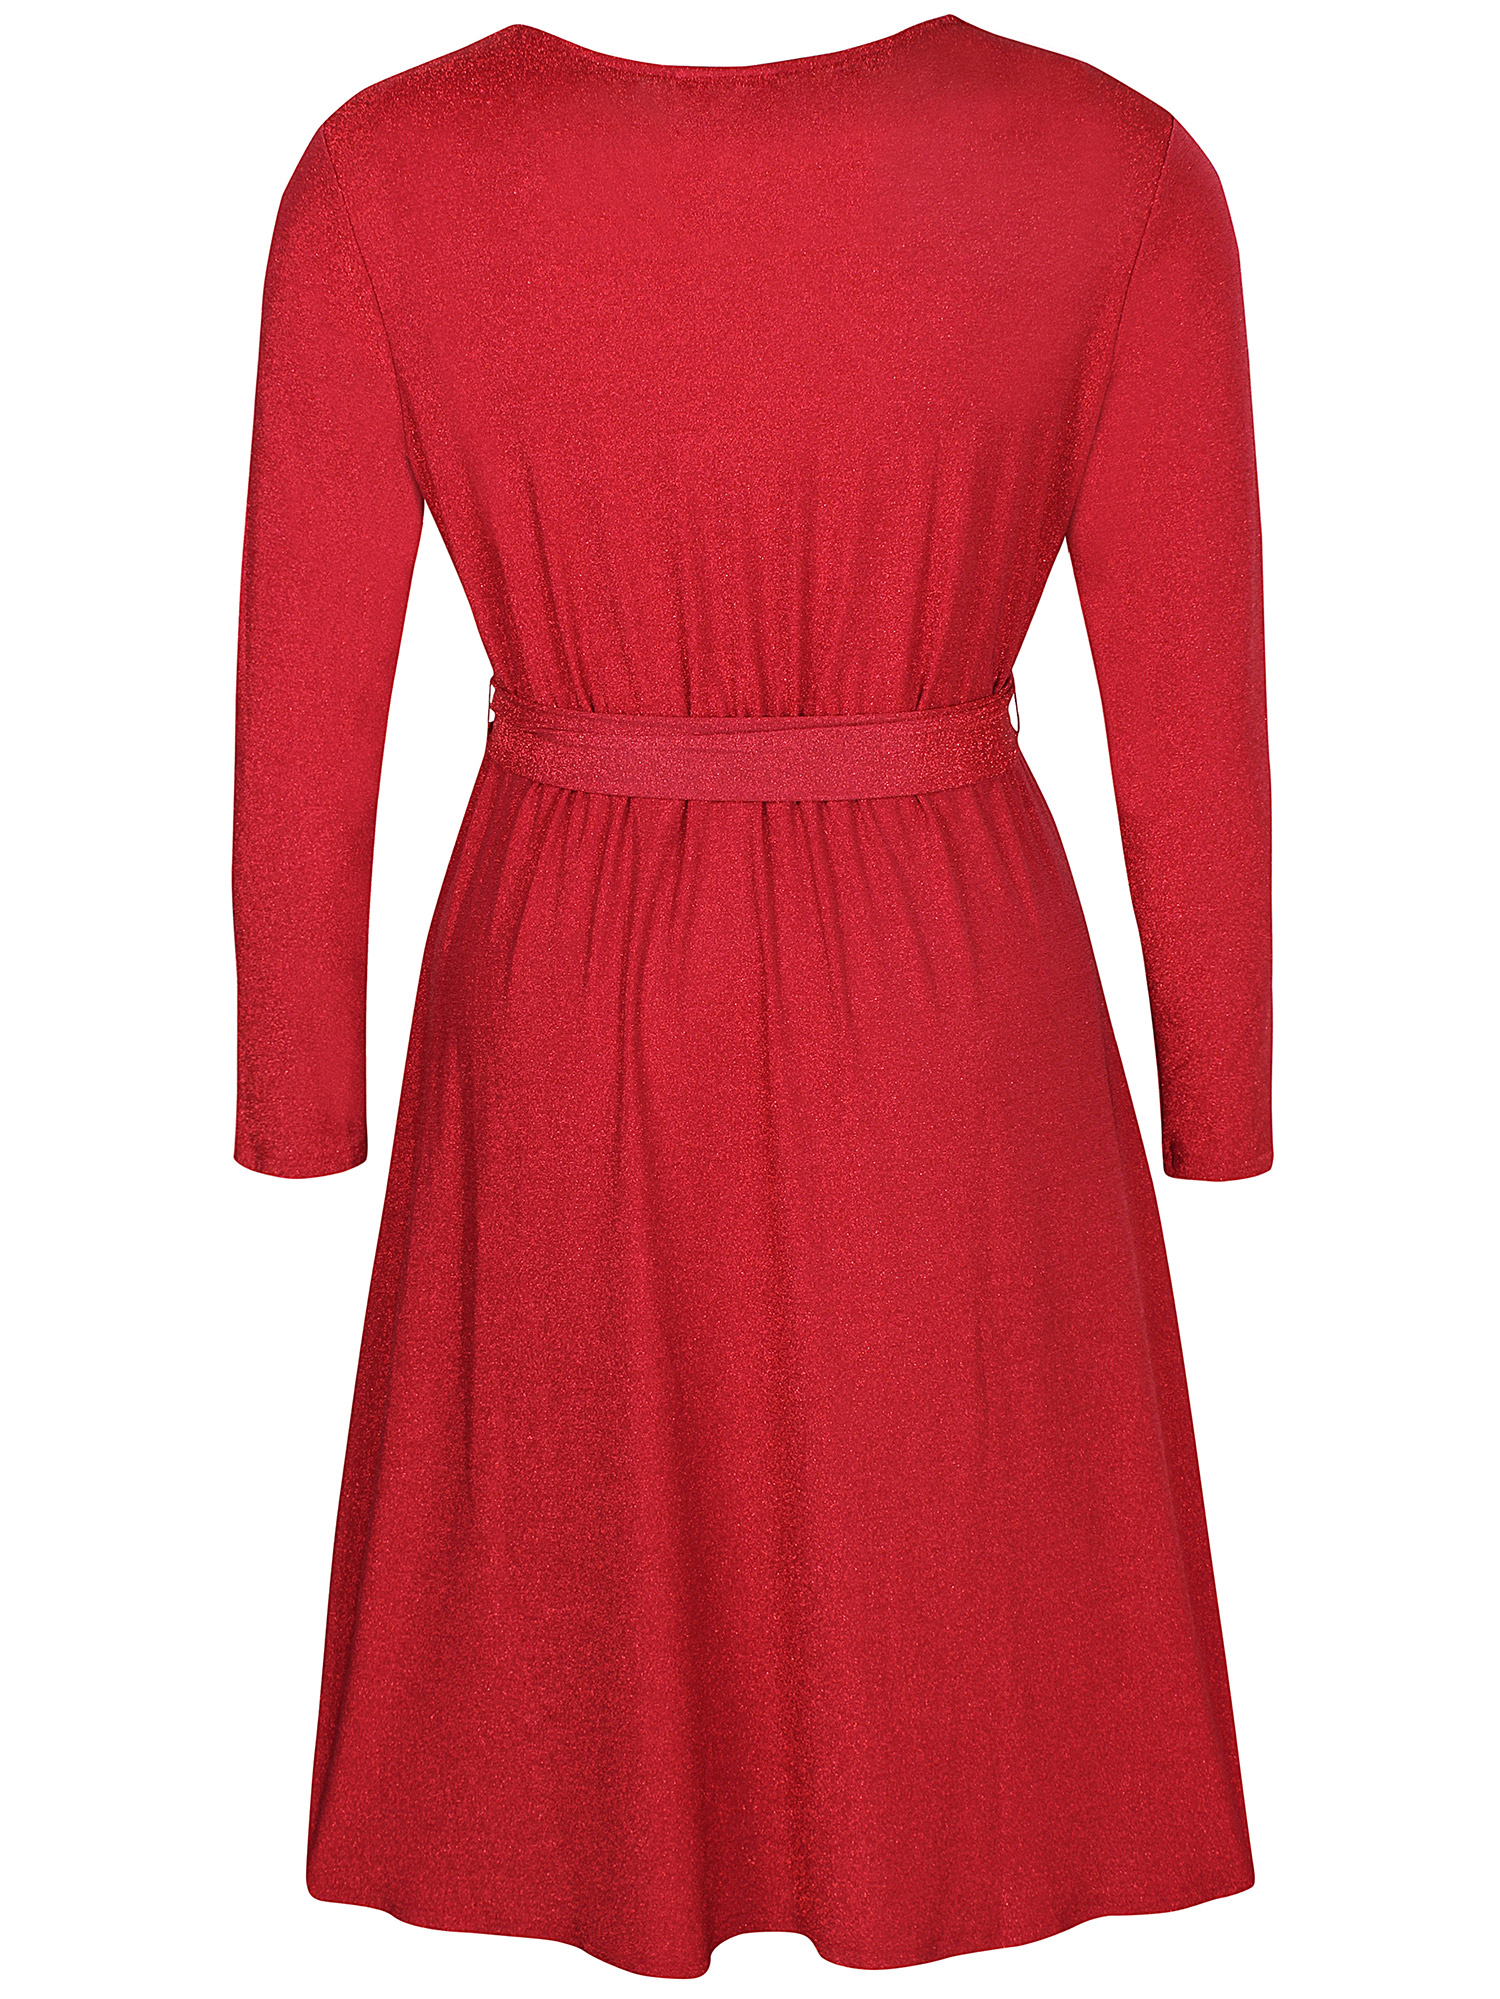 JAYLEE - Rød glitter kjole fra Zhenzi